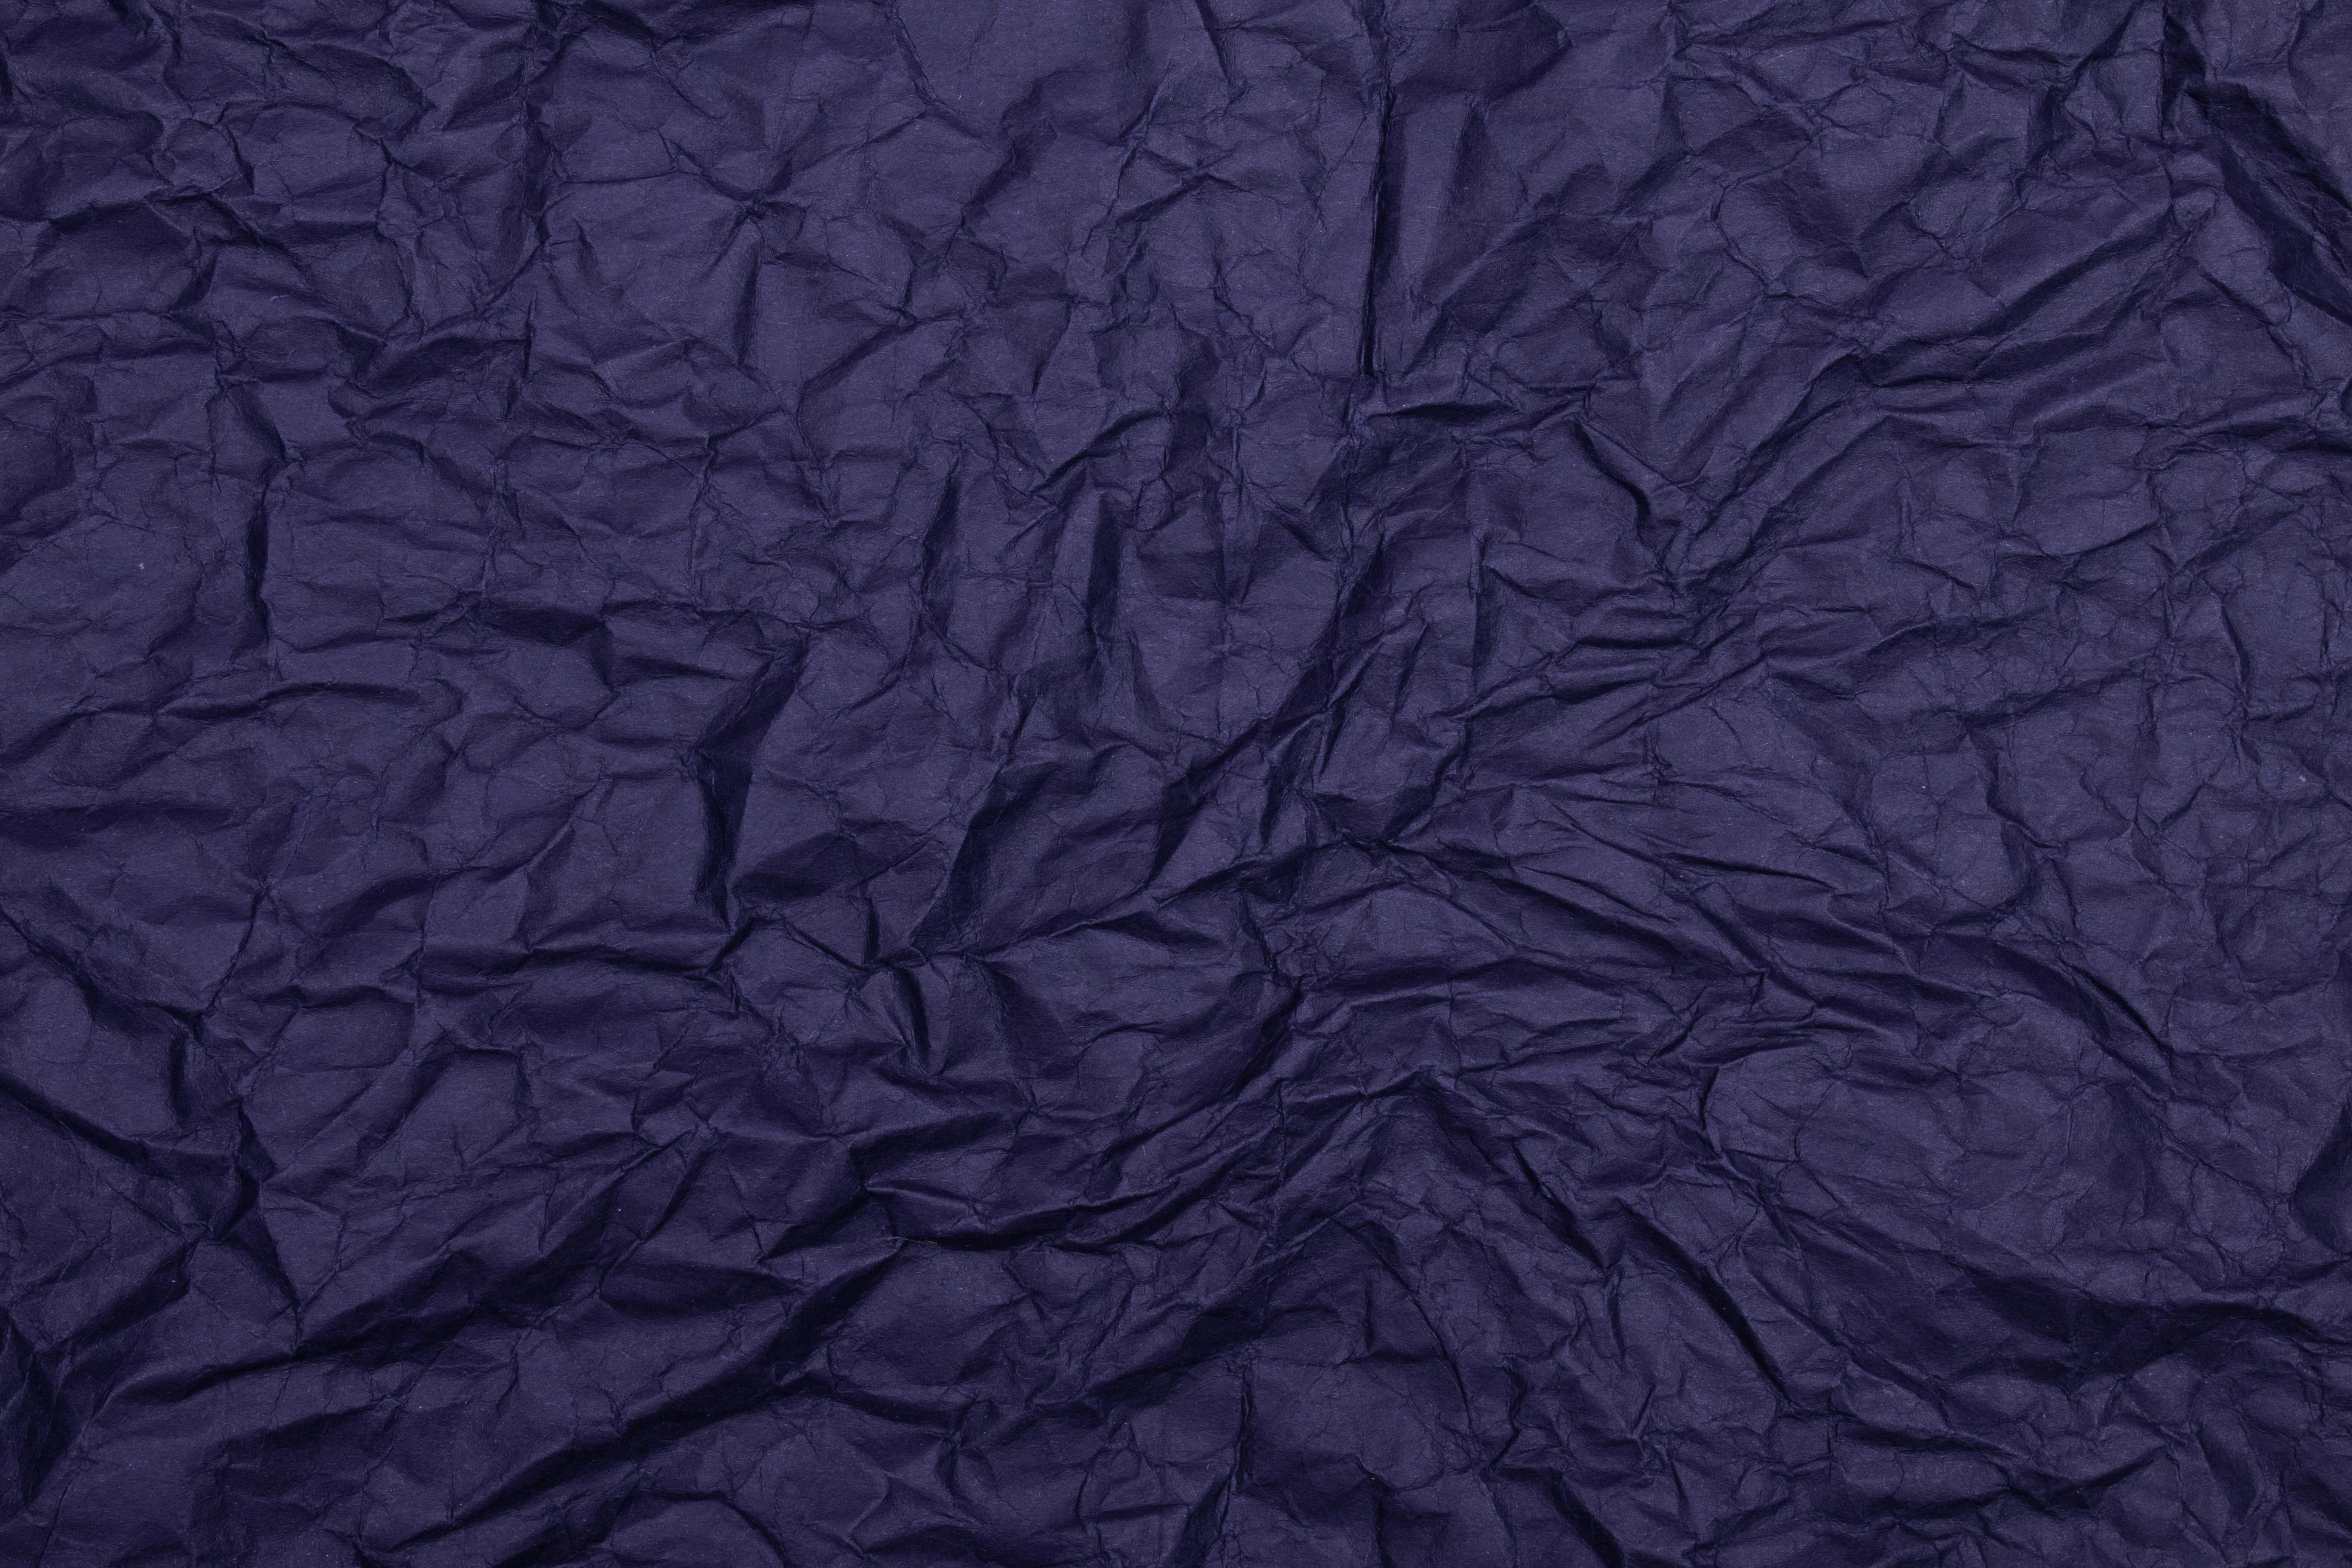 dark blue paper texture